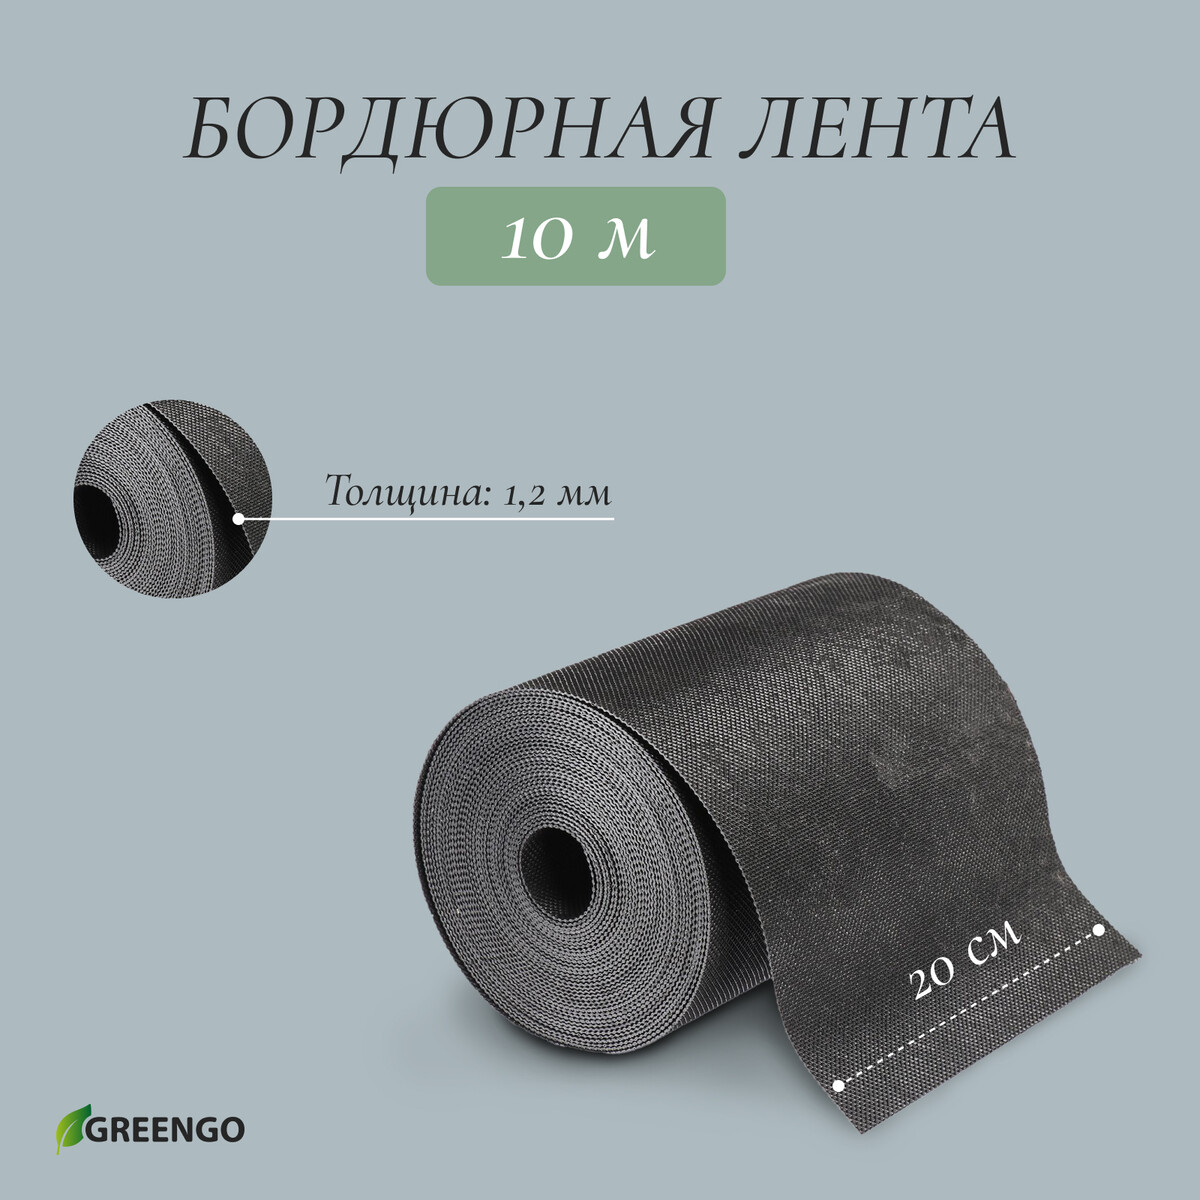 Лента бордюрная, 0.2 × 10 м, толщина 1.2 мм, пластиковая, черная, greengo лента бордюрная 0 15 × 10 м толщина 1 2 мм пластиковая коричневая greengo